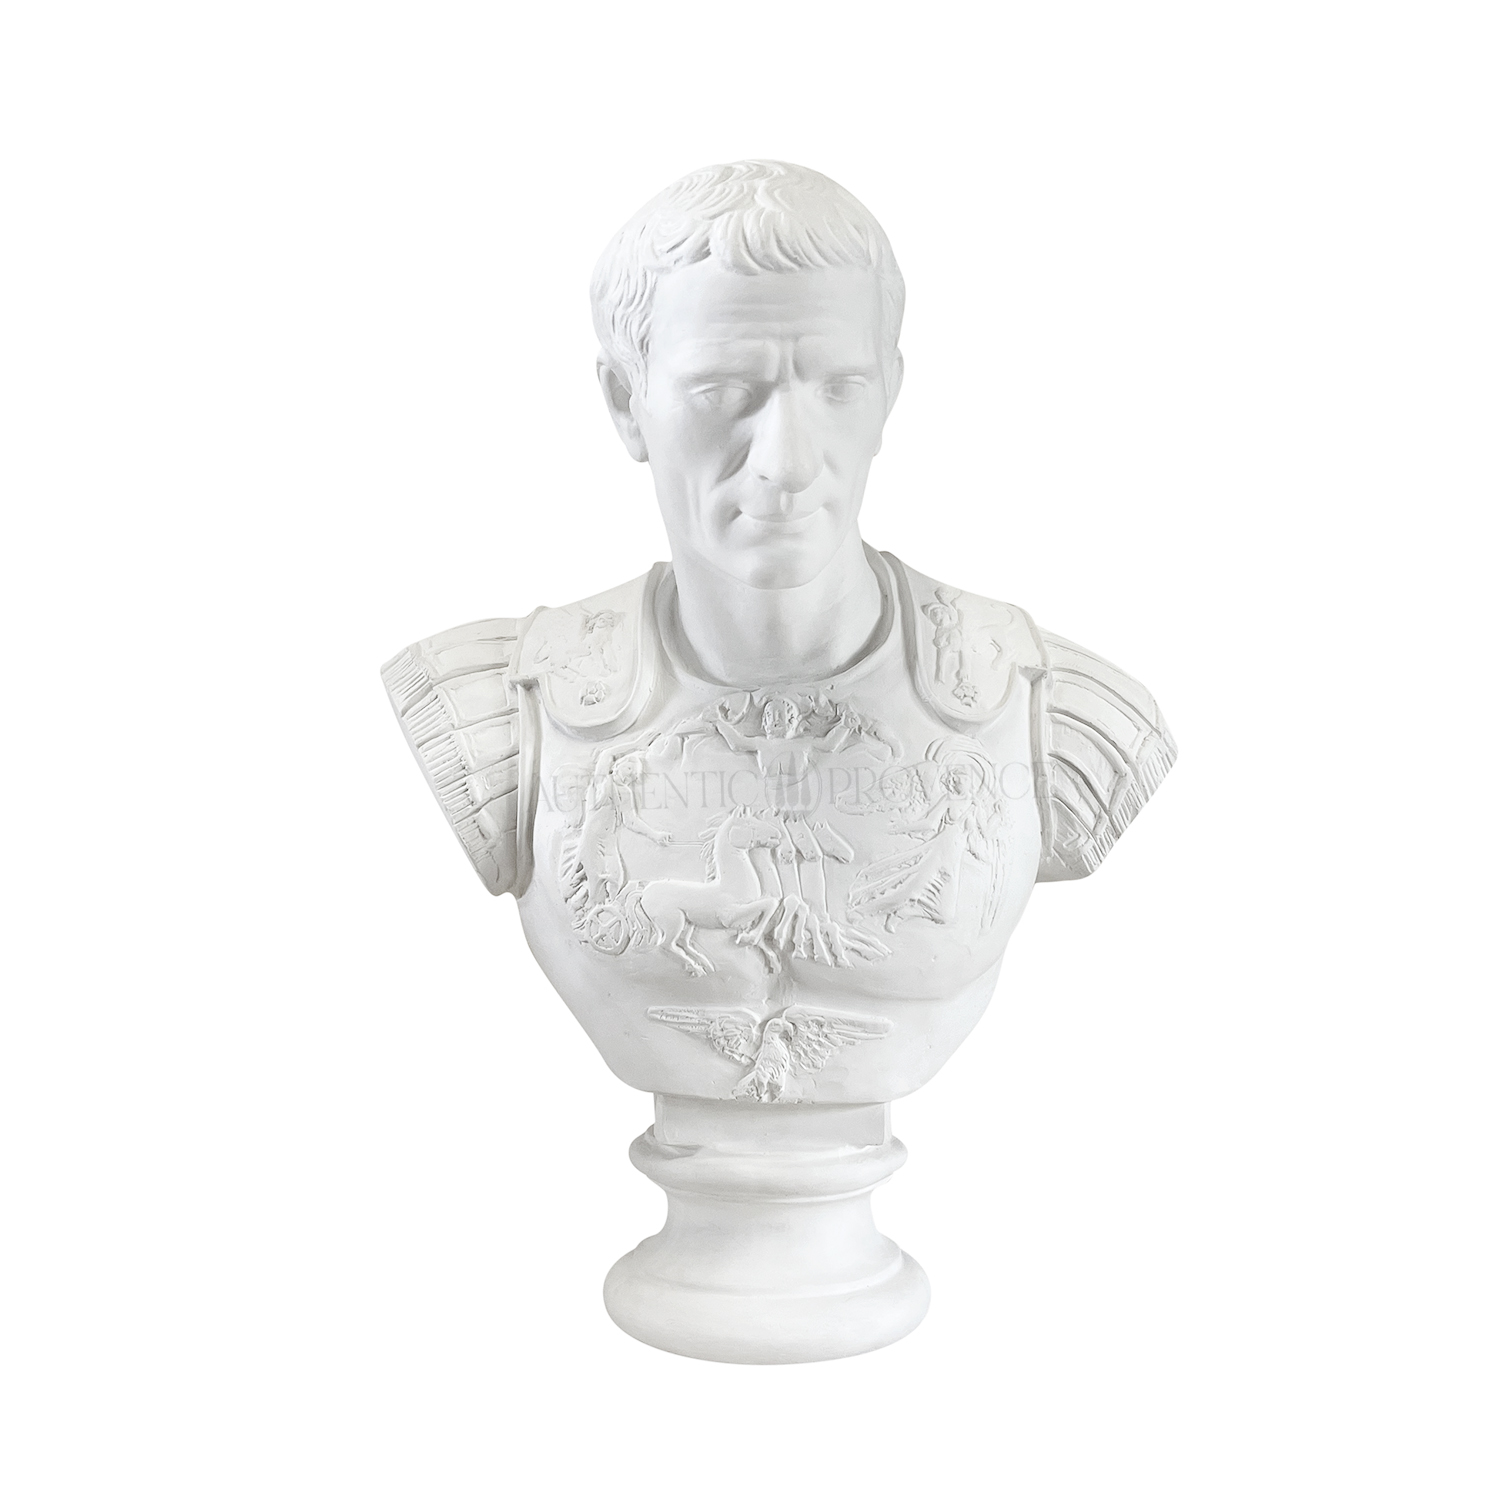 The Bust of Julius Caesar in Plaster